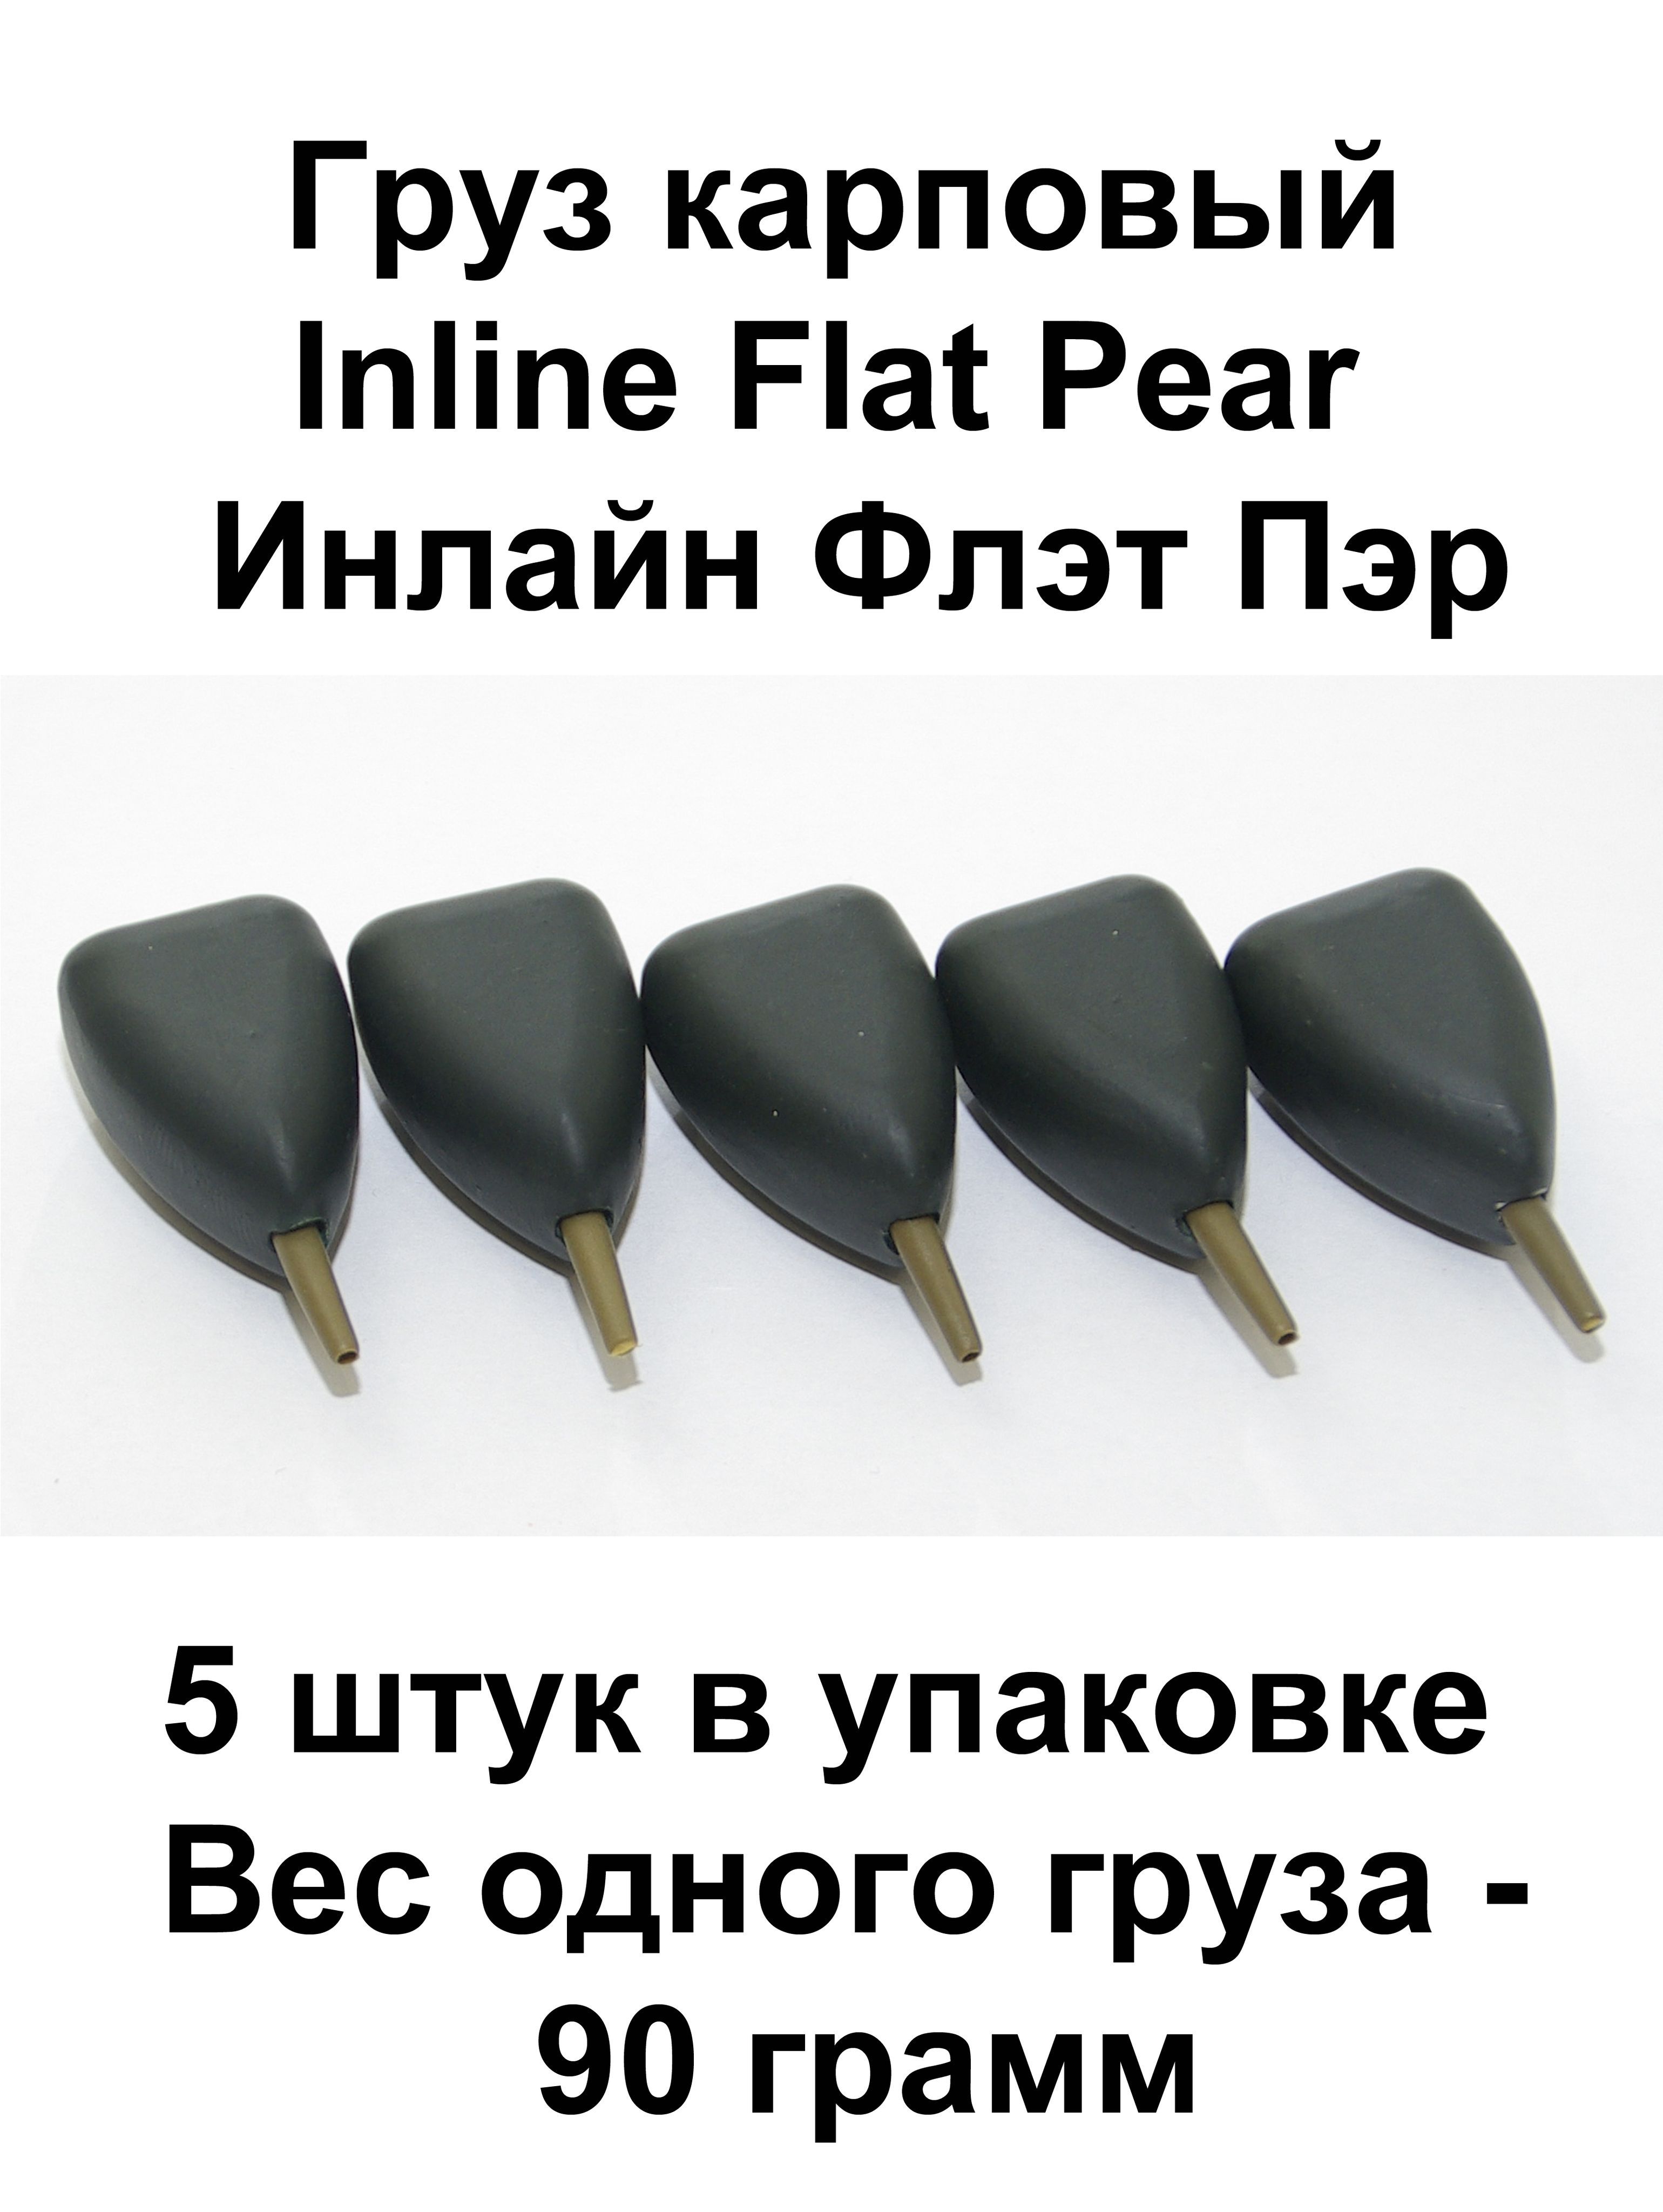 Грузкарповый(Грузило)InlineFlatPear(Плоскаягруша)90гр.5штвупаковке